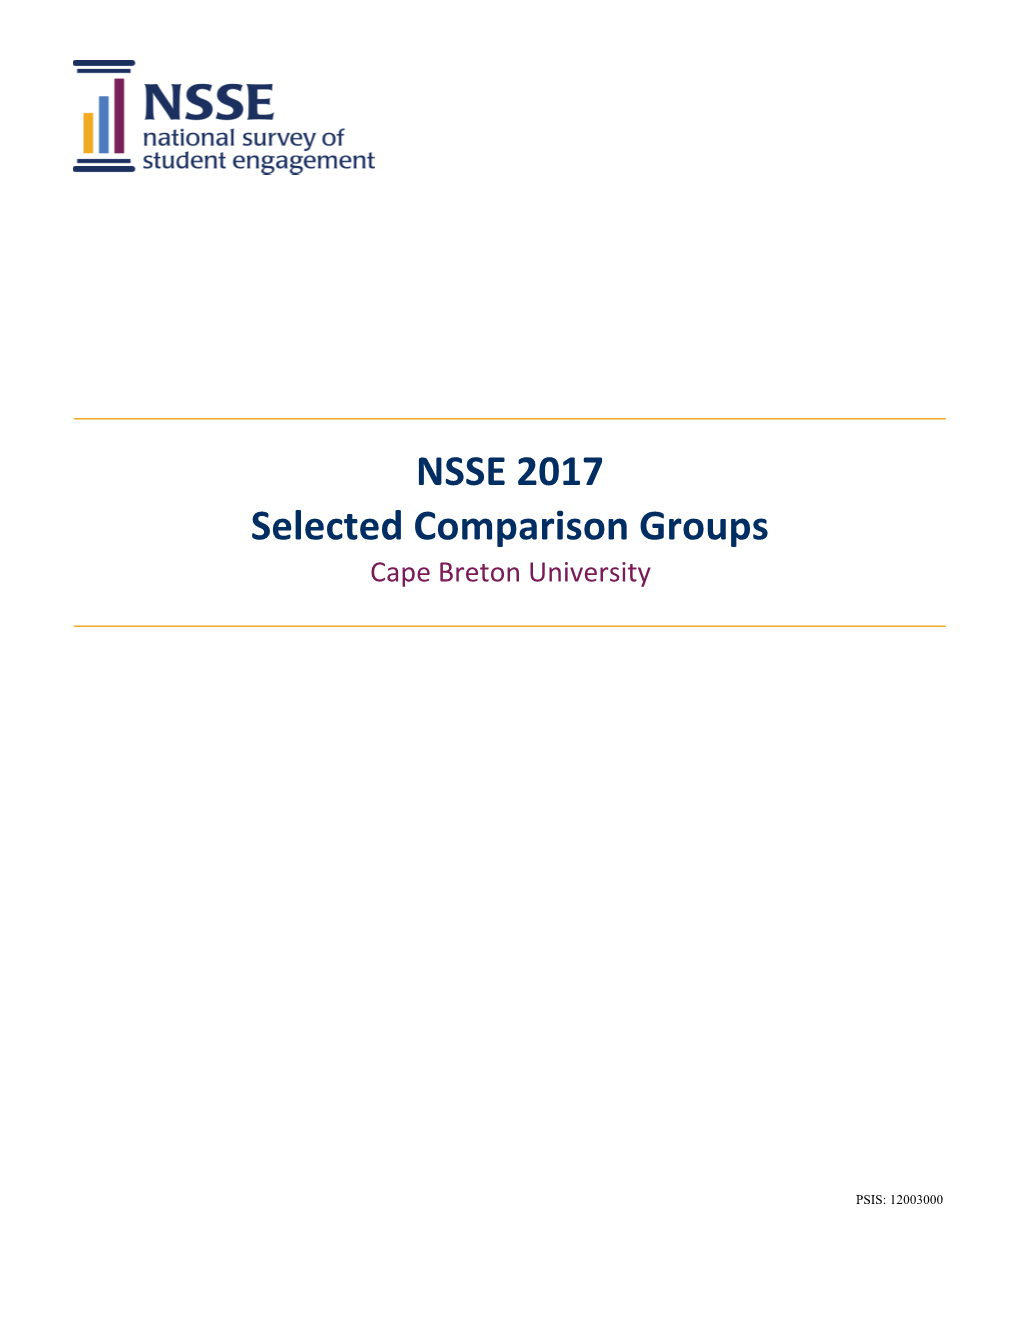 NSSE 2017 Selected Comparison Groups Cape Breton University